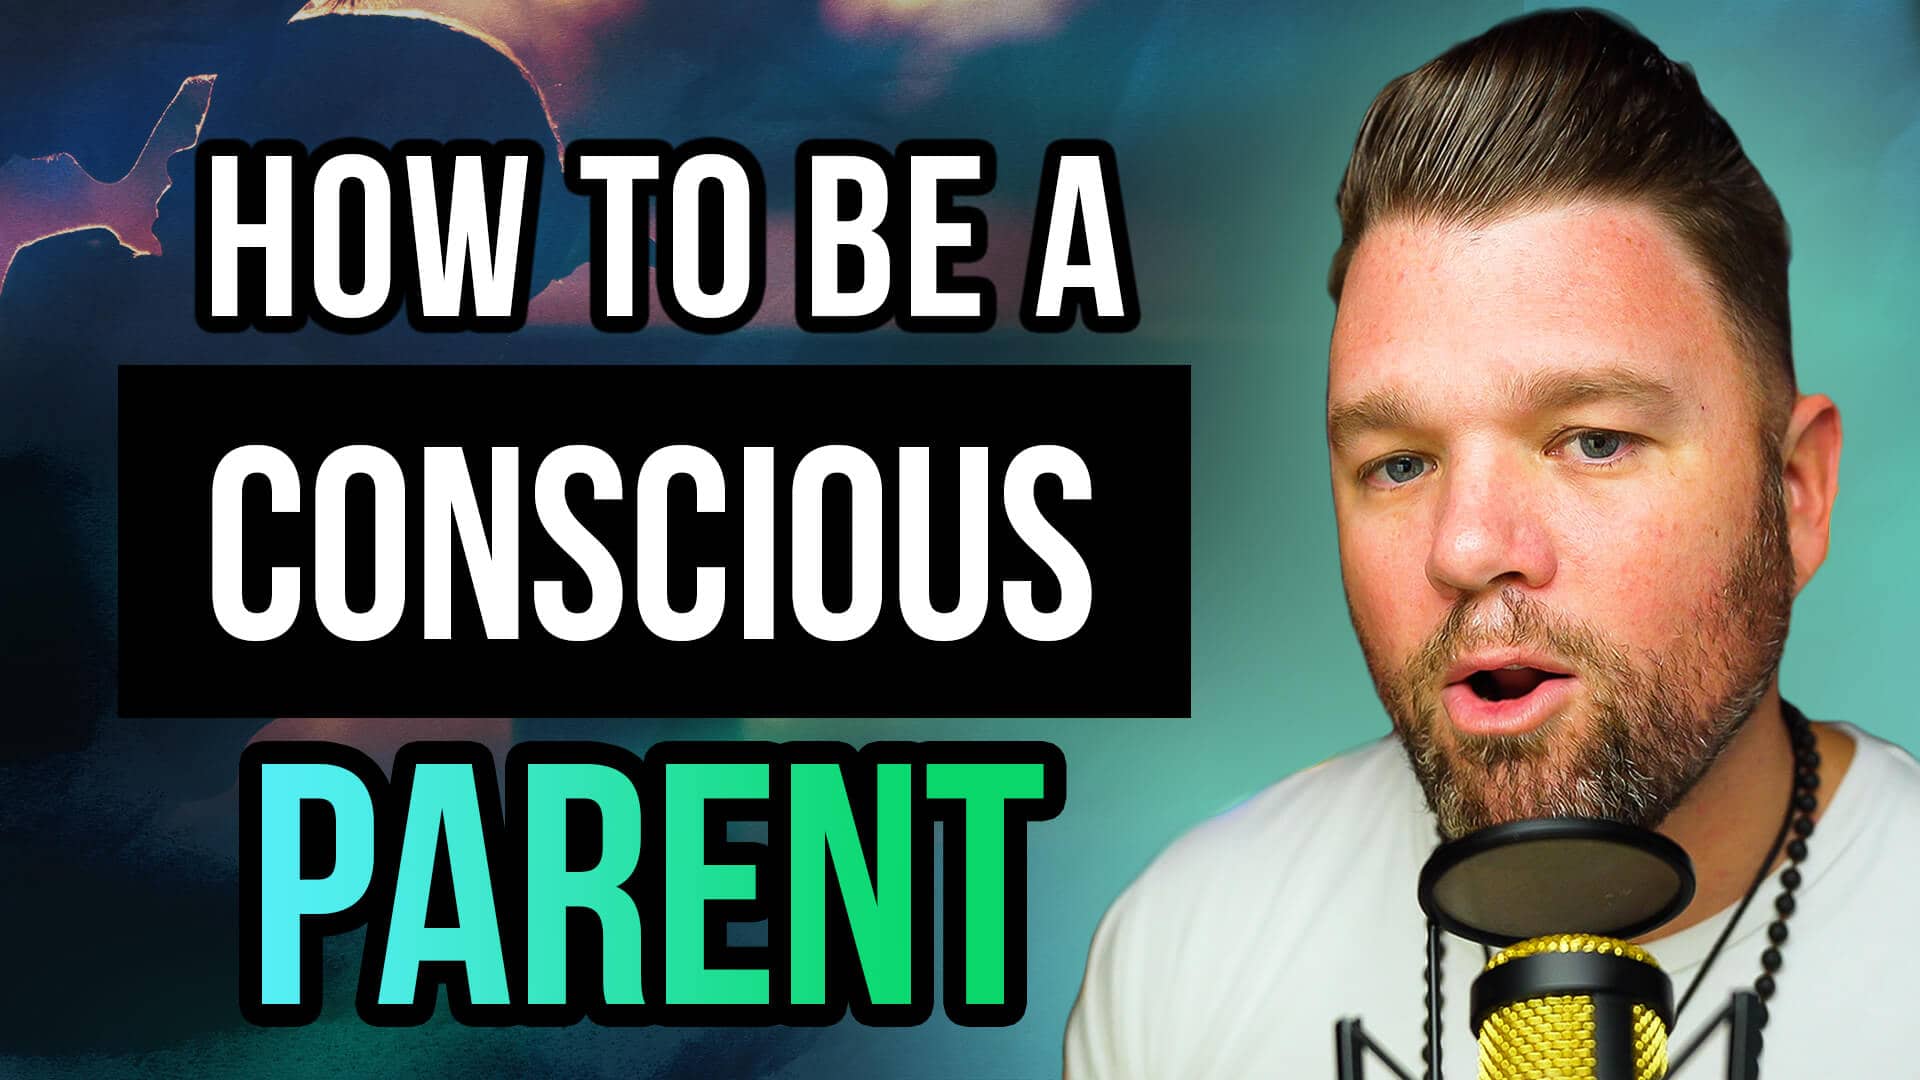 SOLOCAST | 11 Ways to Be a More Conscious Parent